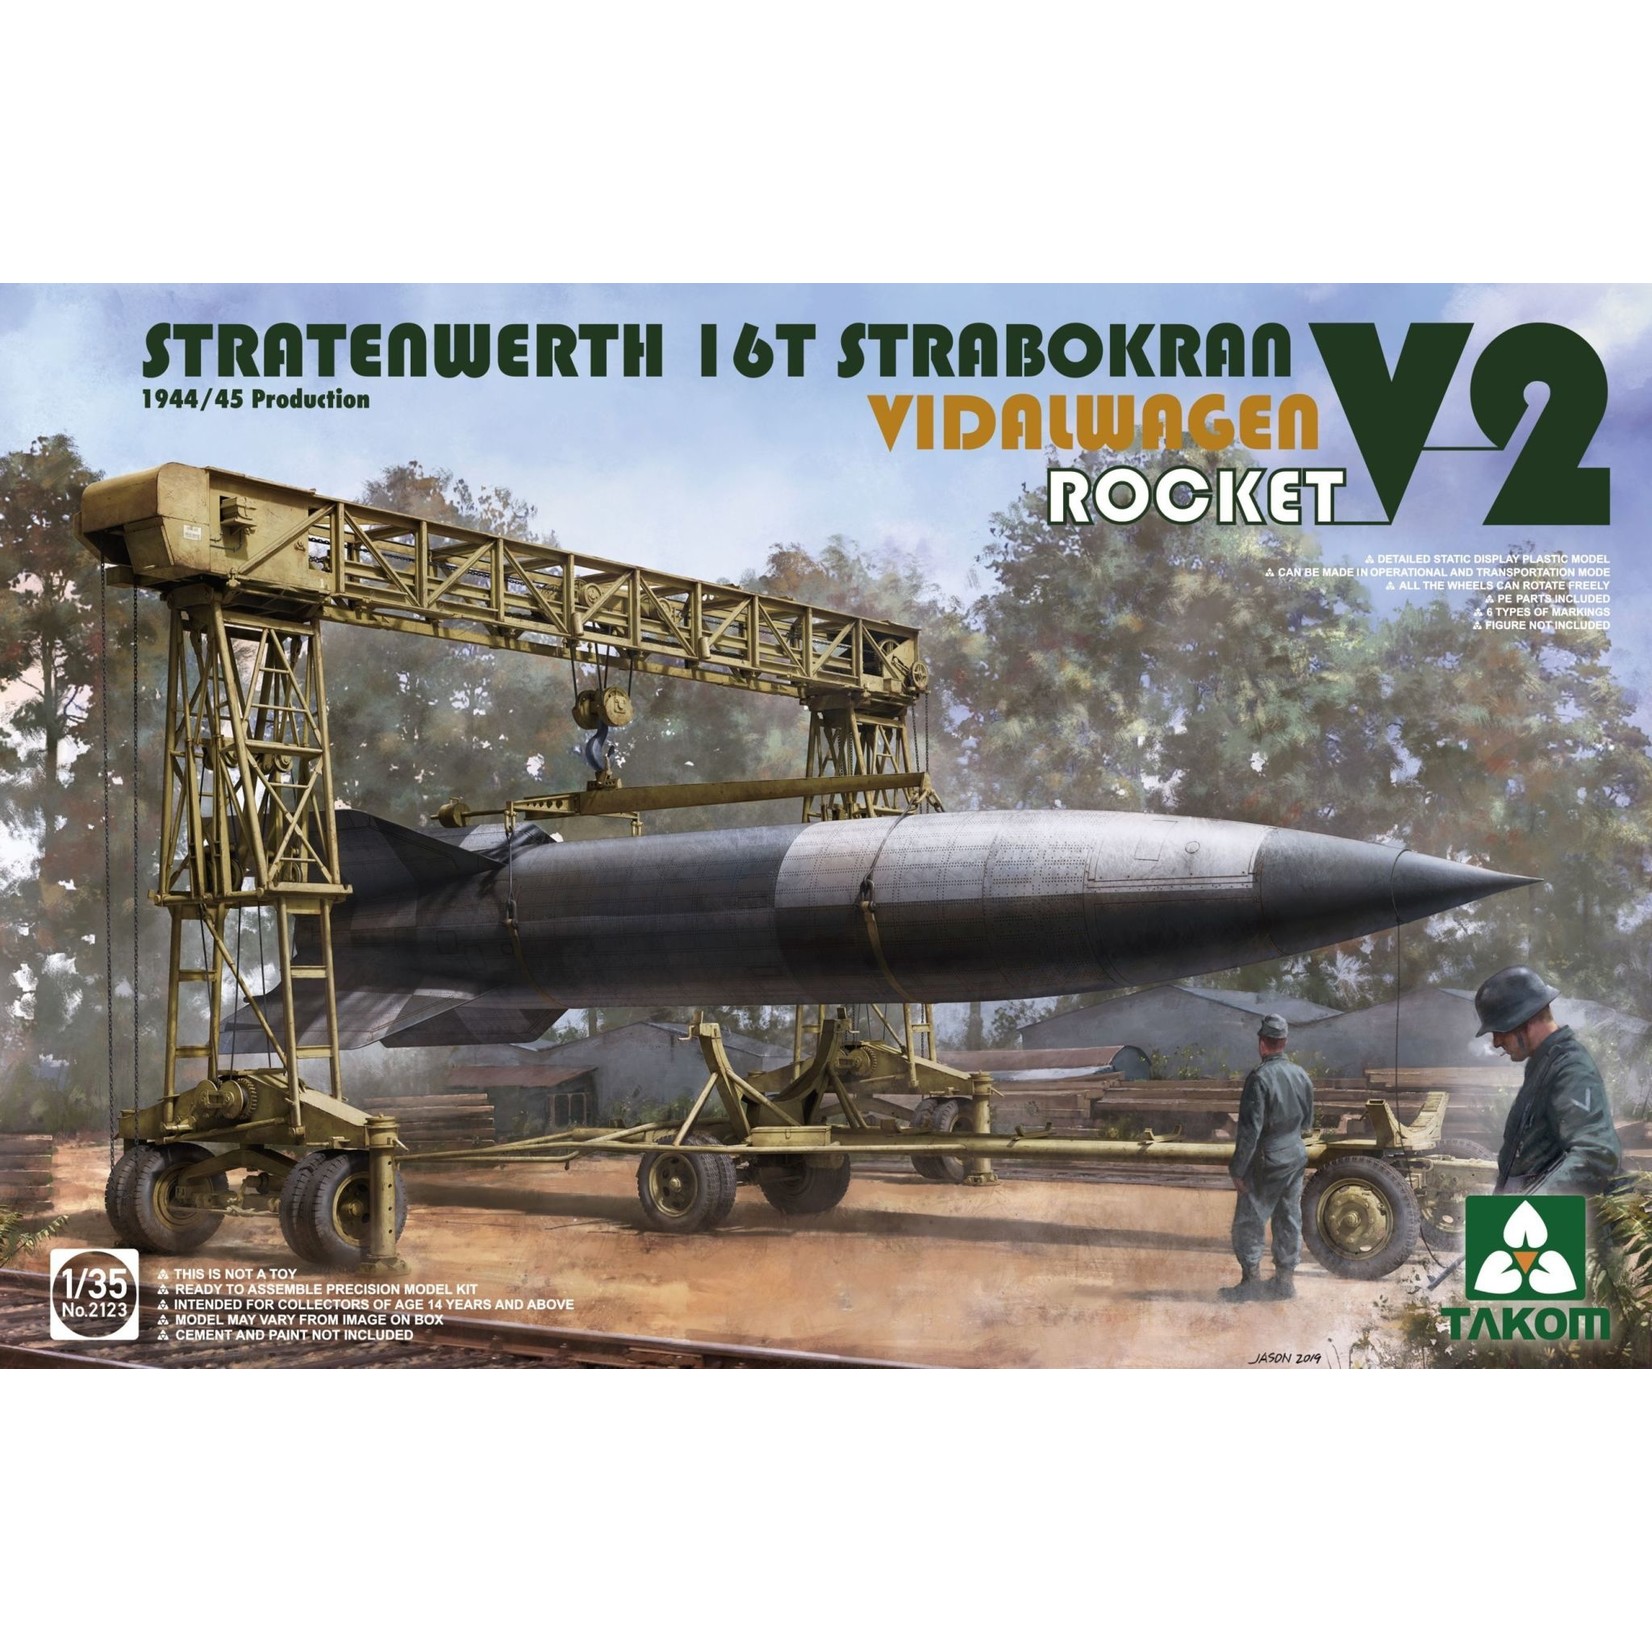 Takom TAK2123 Stratenwerth 16T Strabokran with V-2 Rocket & Vidalwagen (1/35)